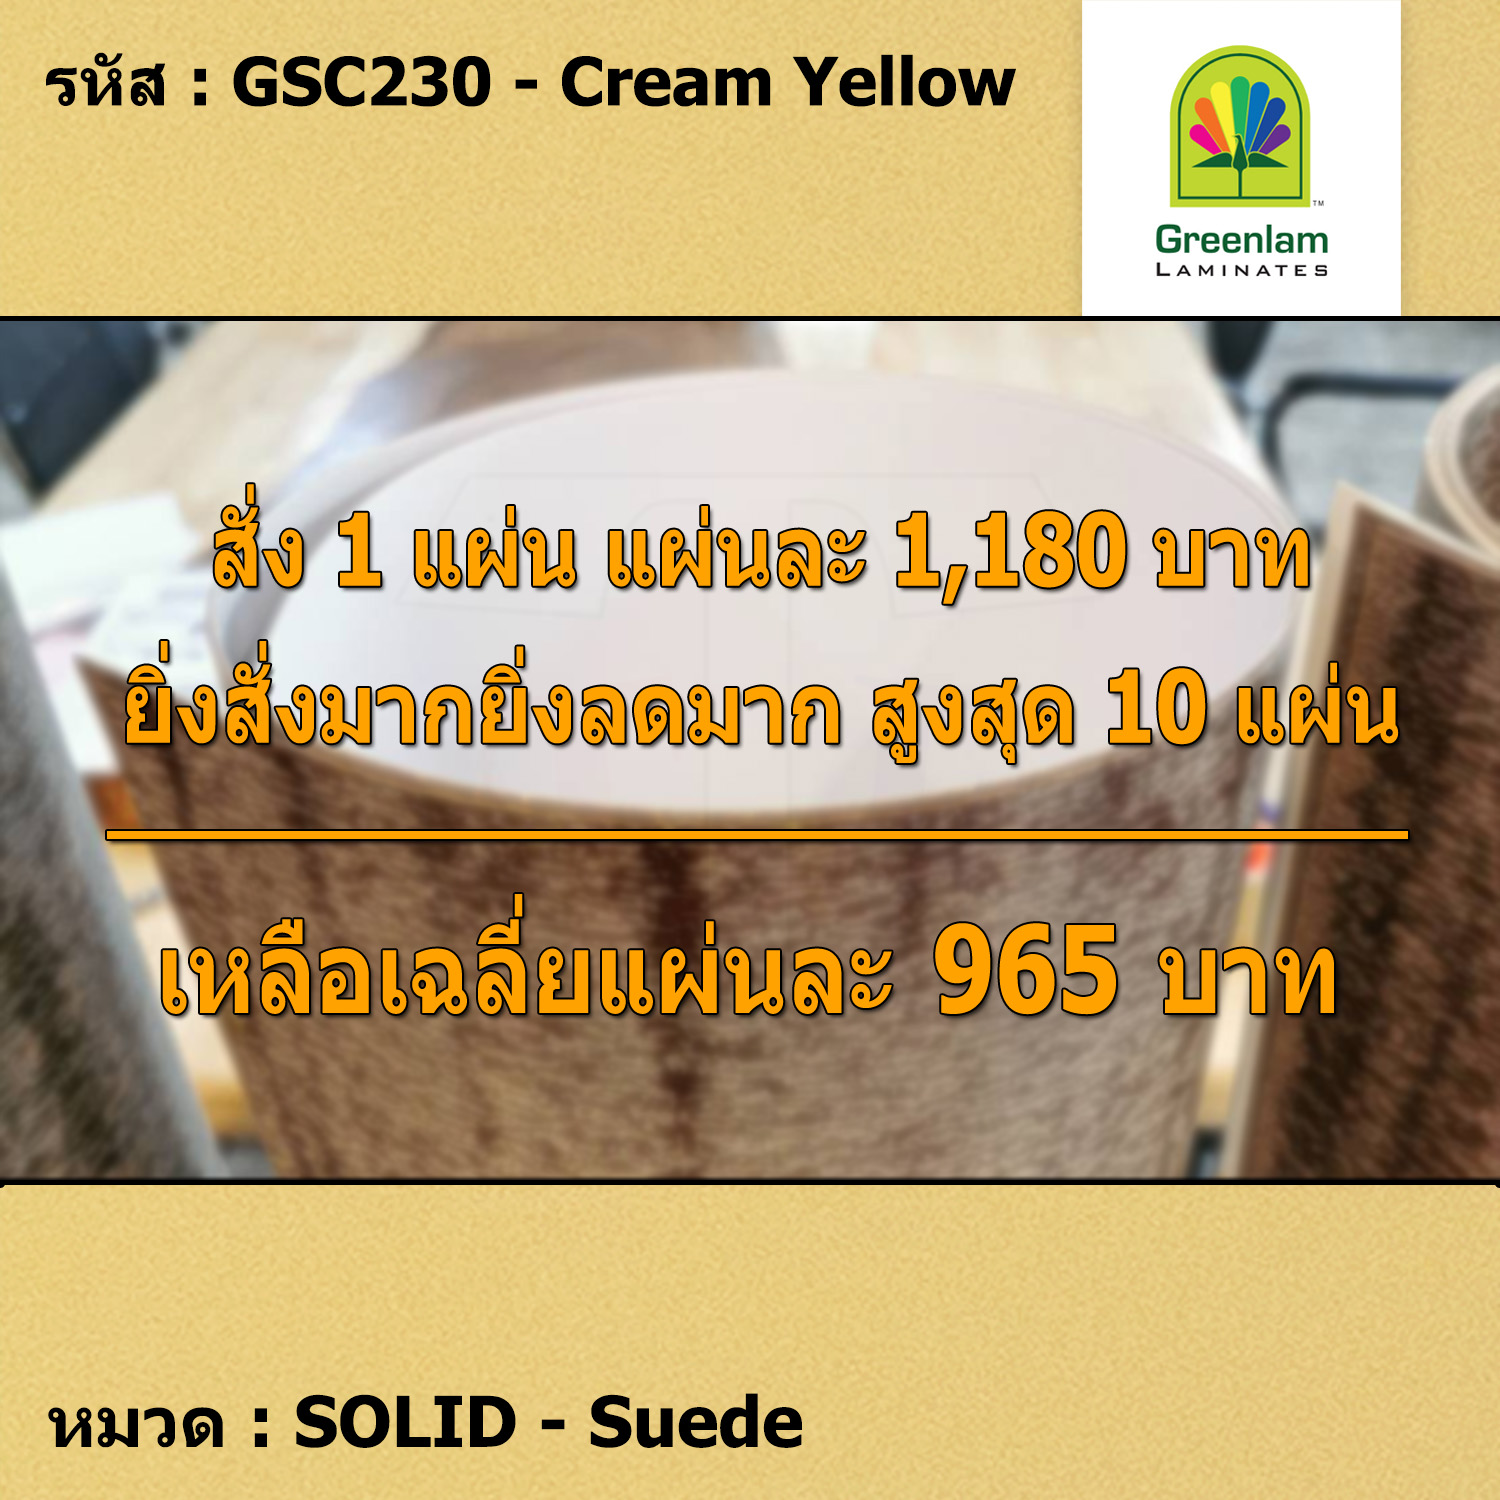 แผ่นโฟเมก้า แผ่นลามิเนต ยี่ห้อ Greenlam สีเหลืองครีม รหัส GSC230 Cream Yellow พื้นผิวลาย Suede ขนาด 1220 x 2440 มม. หนา 0.80 มม. ใช้สำหรับงานตกแต่งภายใน งานปิดผิวเฟอร์นิเจอร์ ผนัง และอื่นๆ เพื่อเพิ่มความสวยงาม formica laminate GSC230